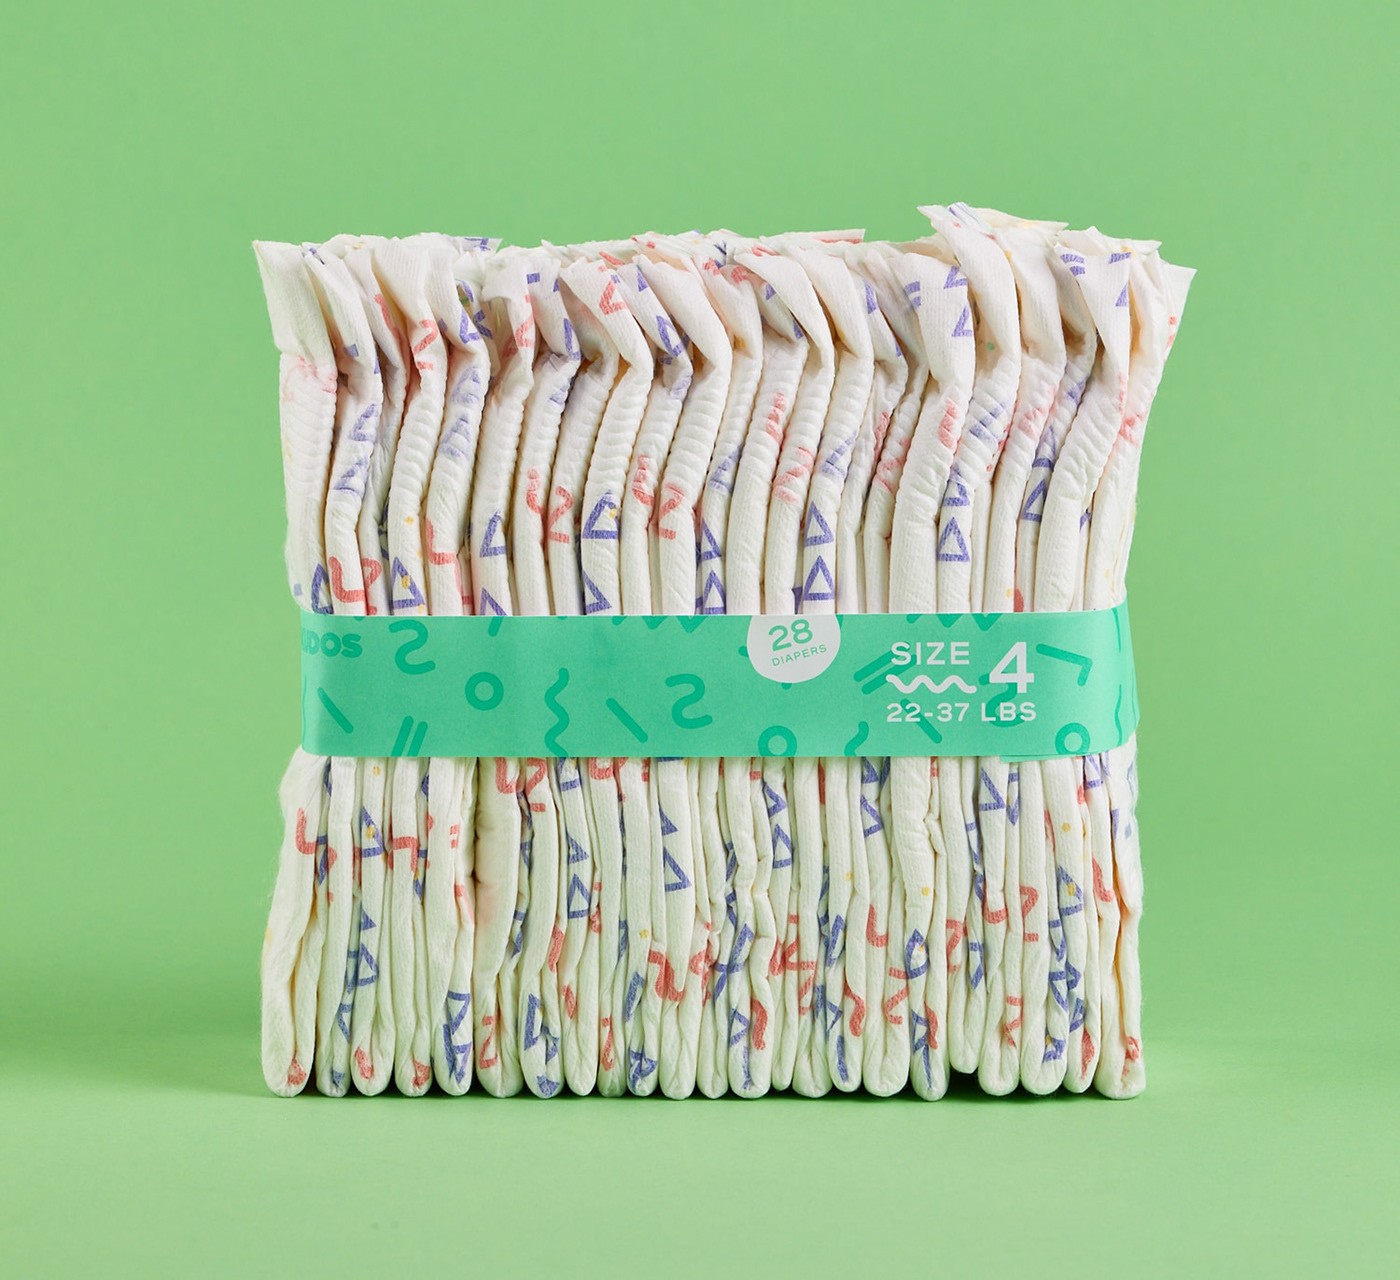 纸尿裤包装设计案例图集 